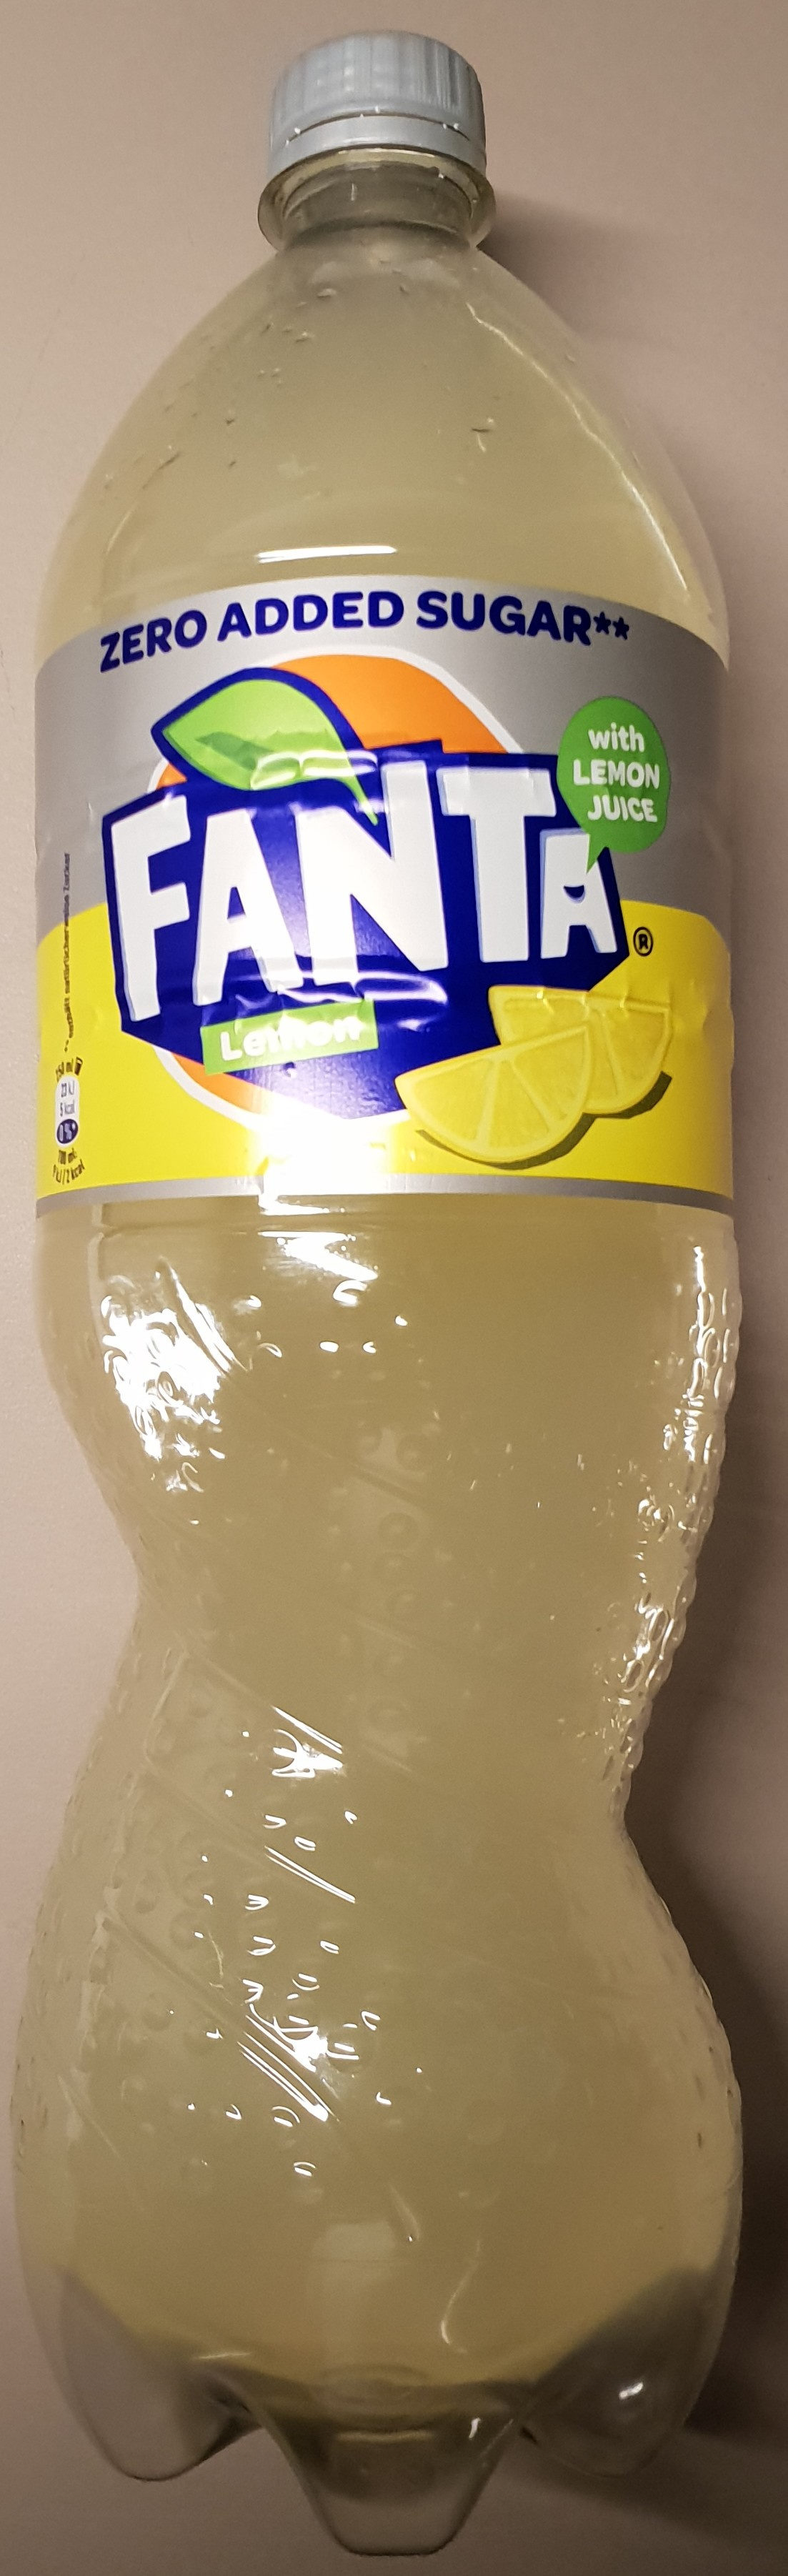 Fanta Lemon - Produkt